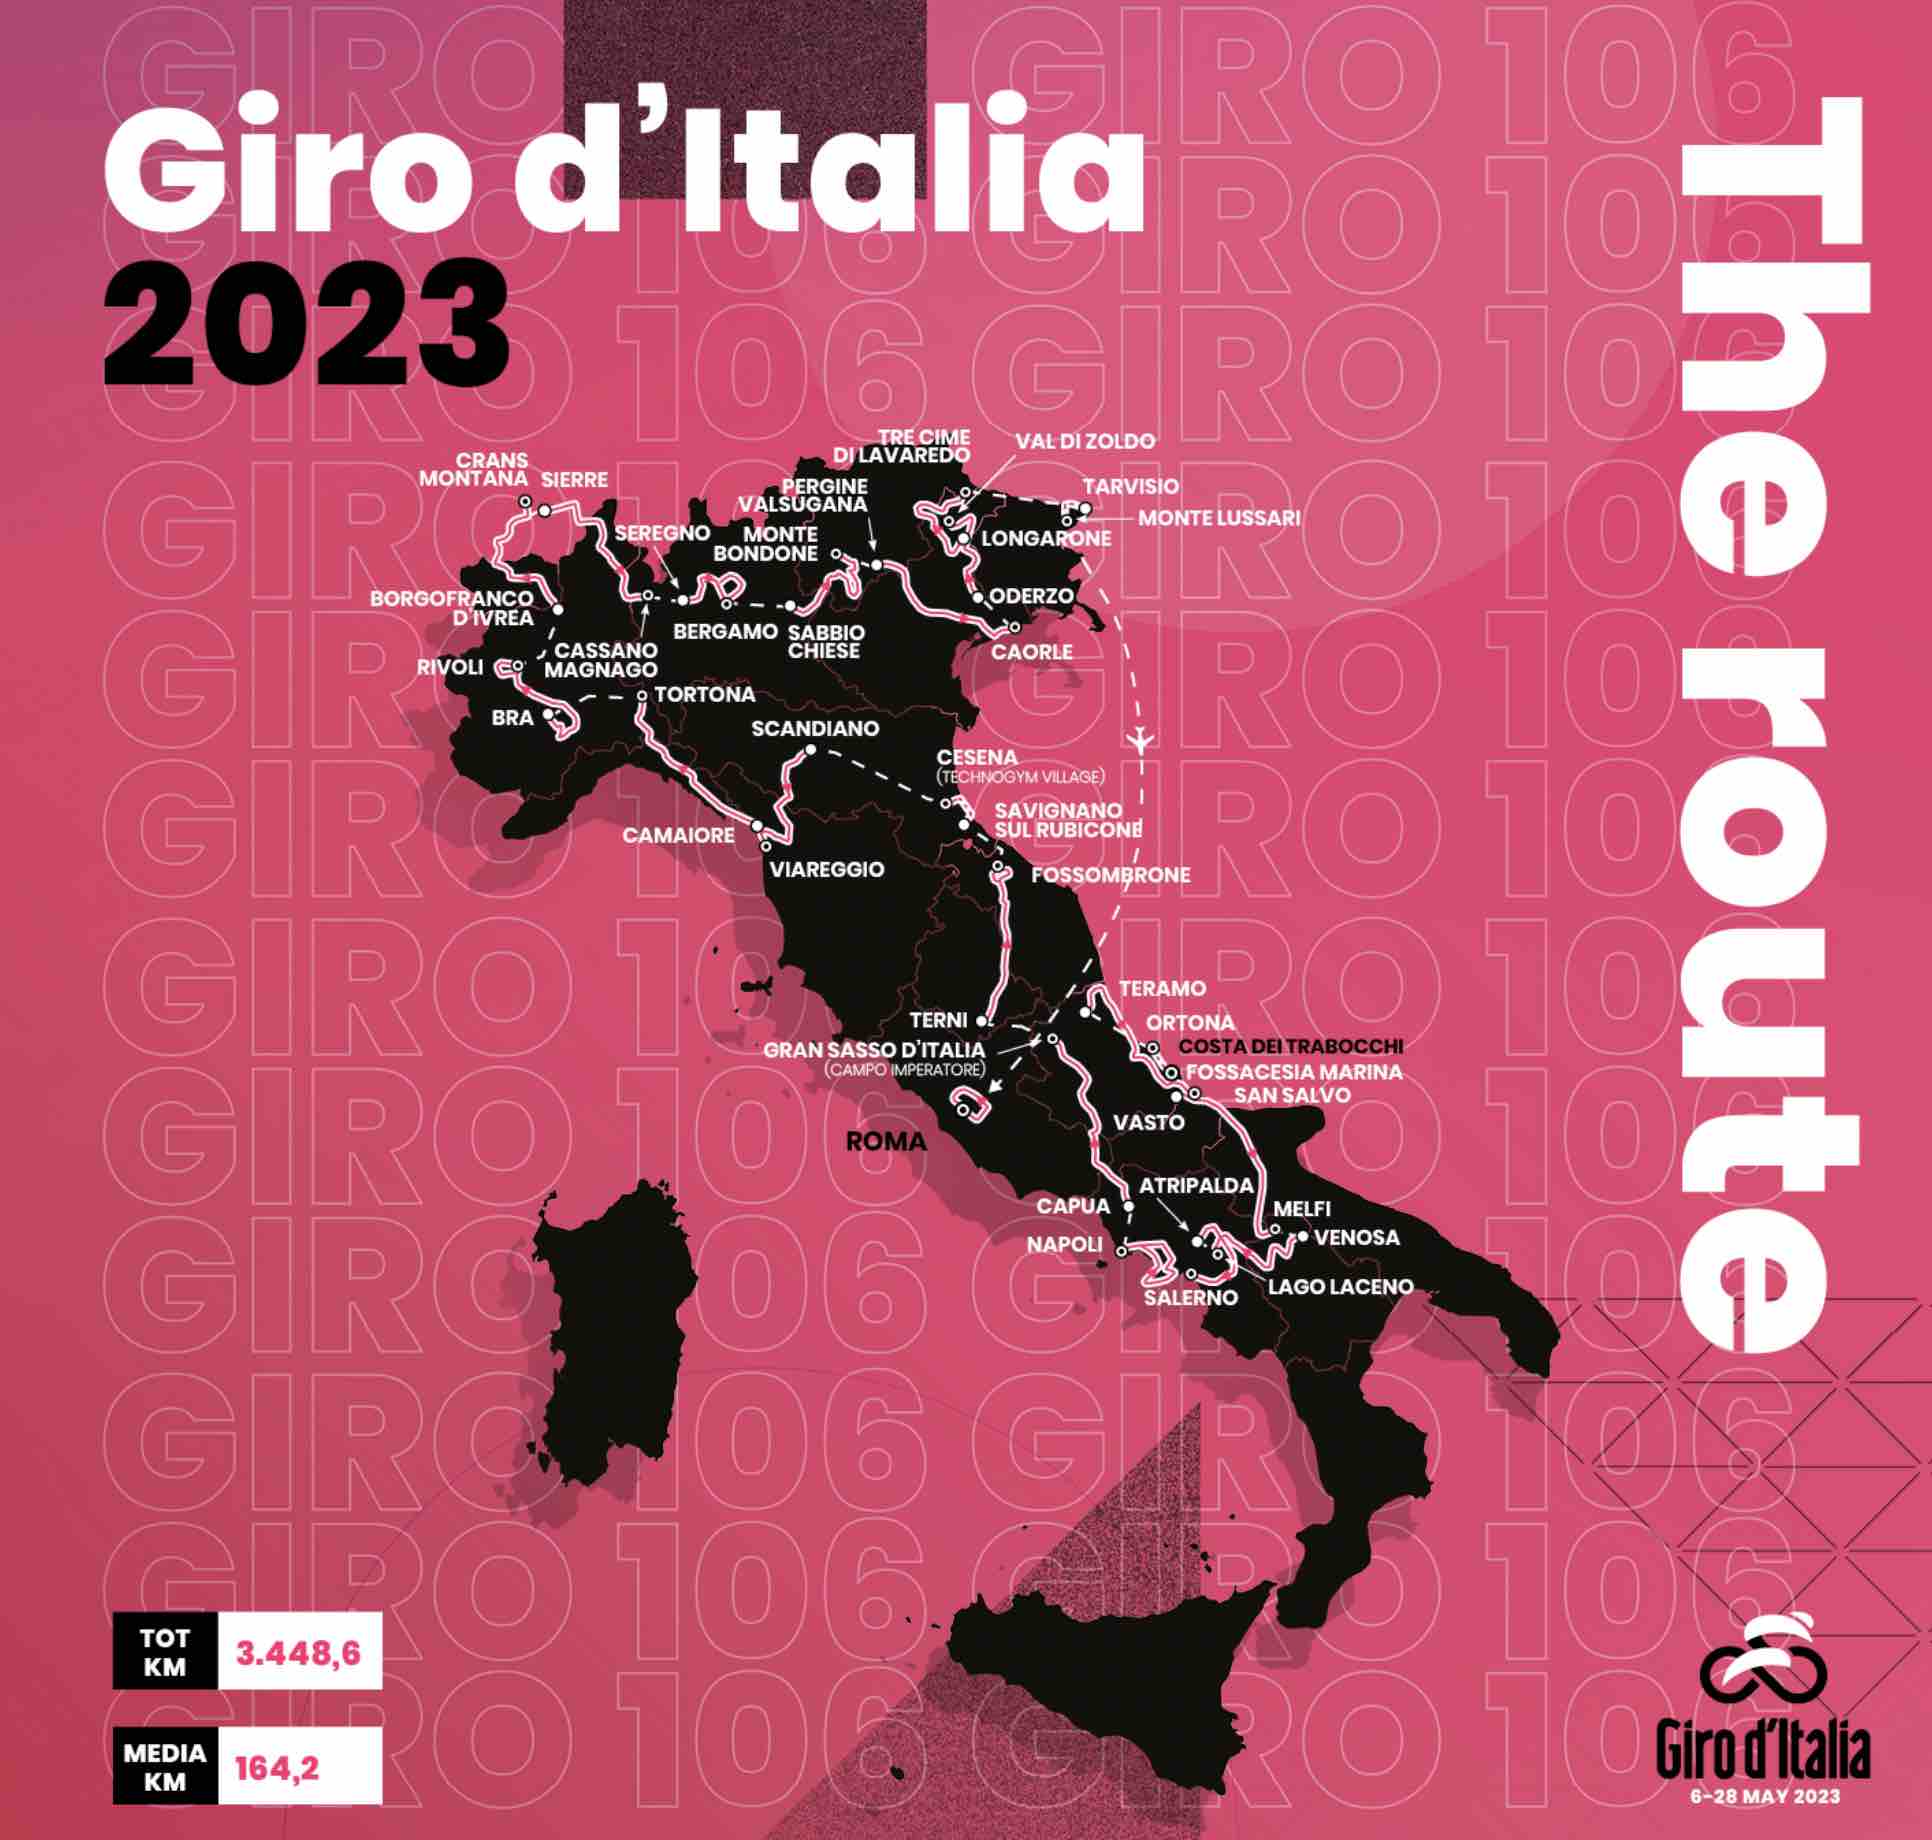 tour d'italie 2023 participants